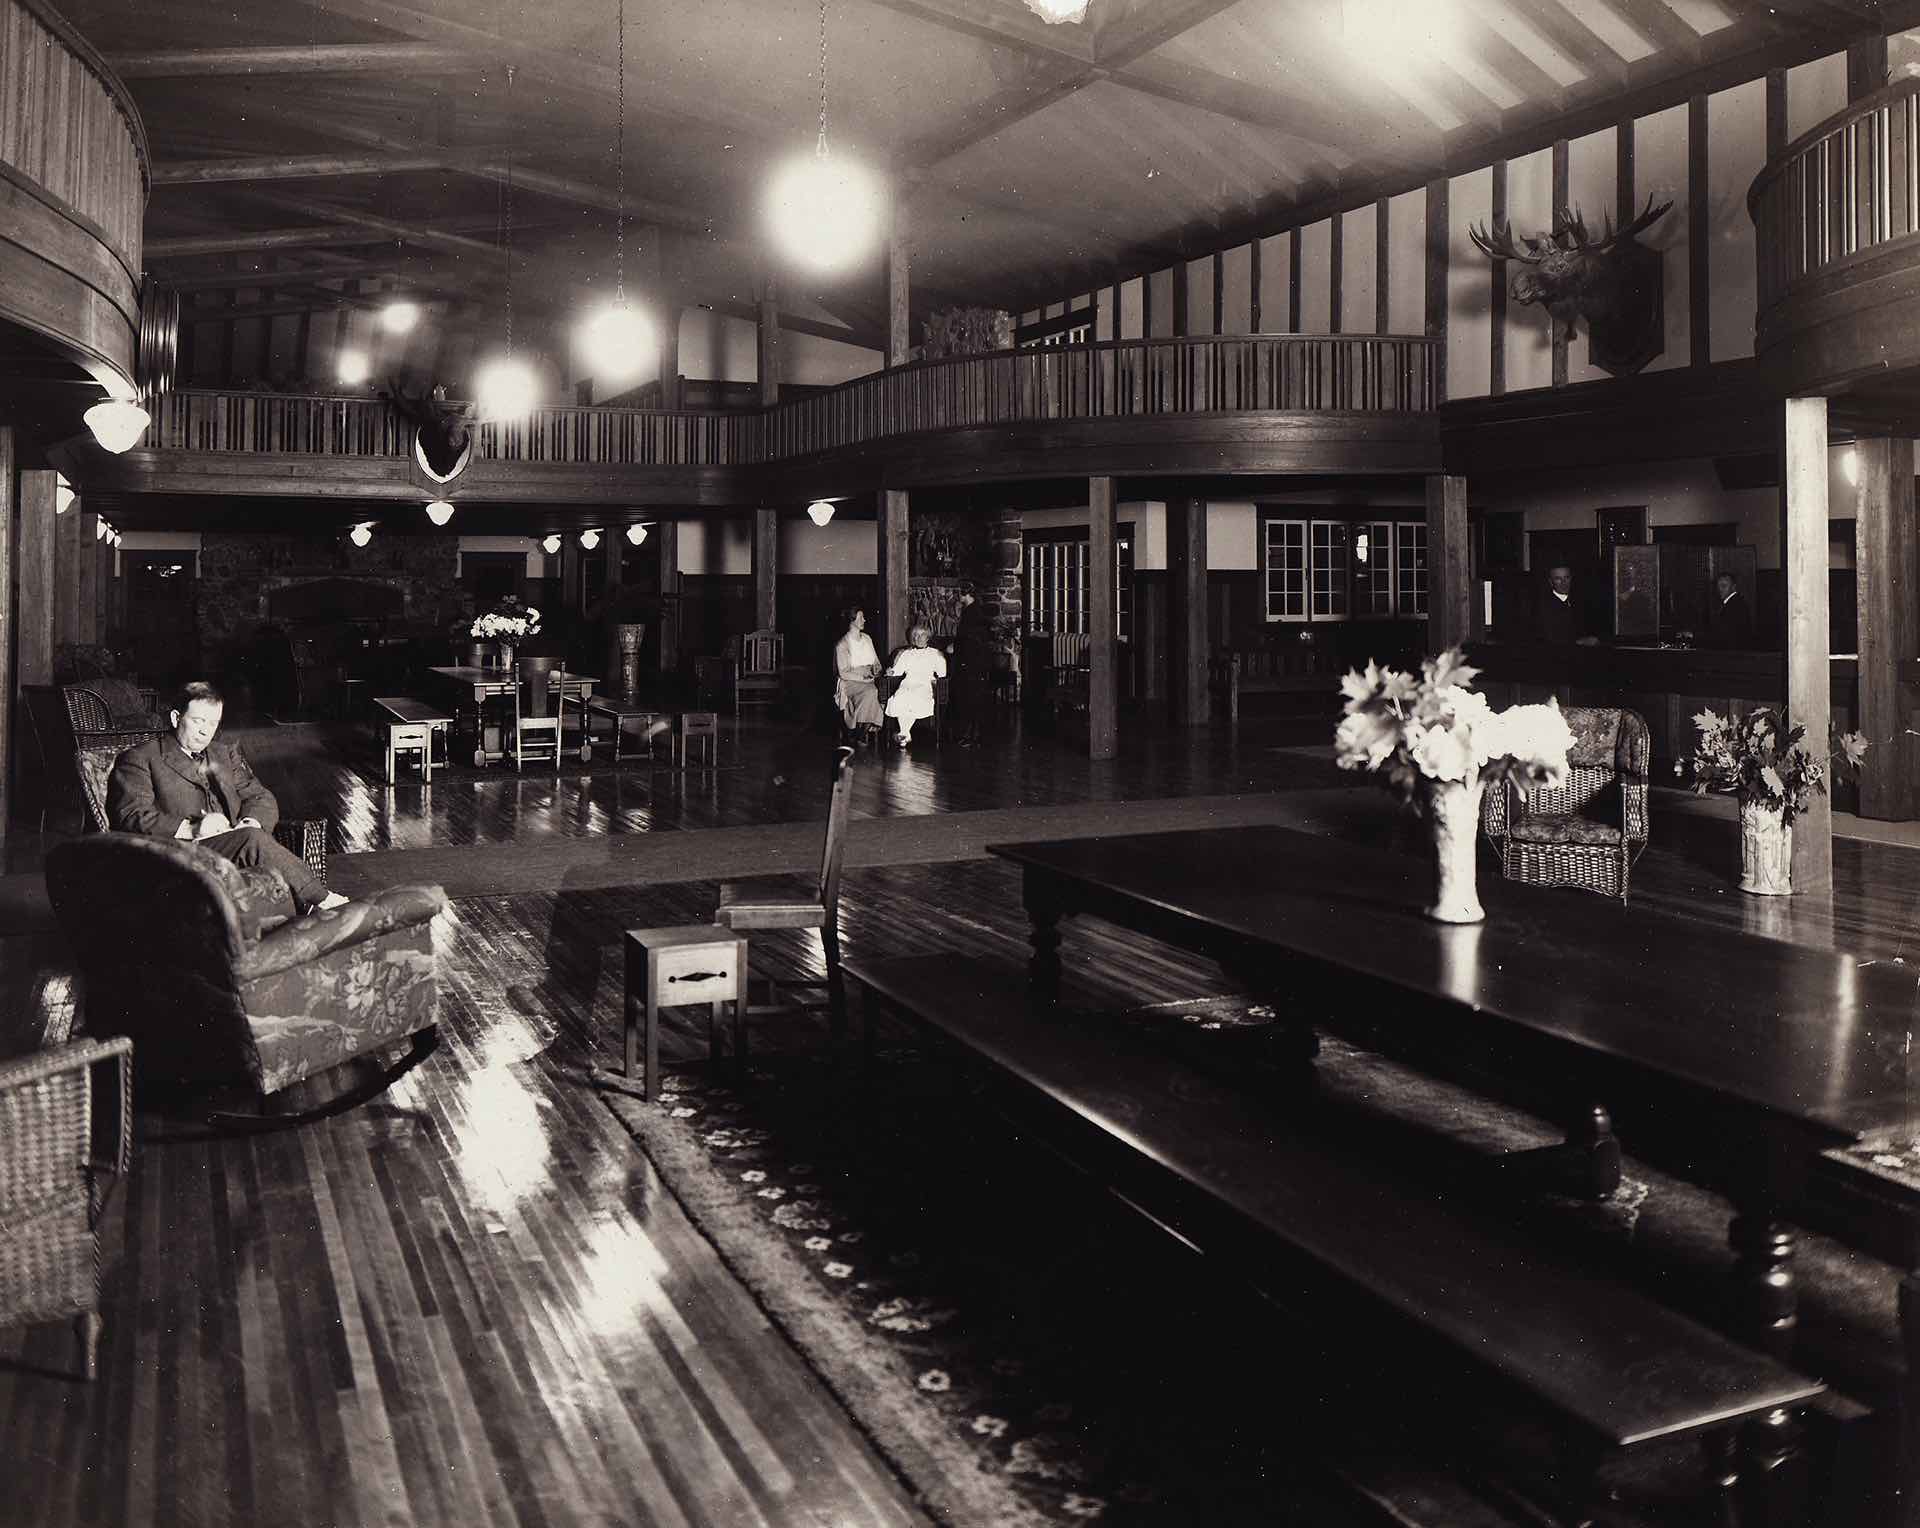 The interior of the original Bigwin Inn on Bigwin Island in the early 1900s